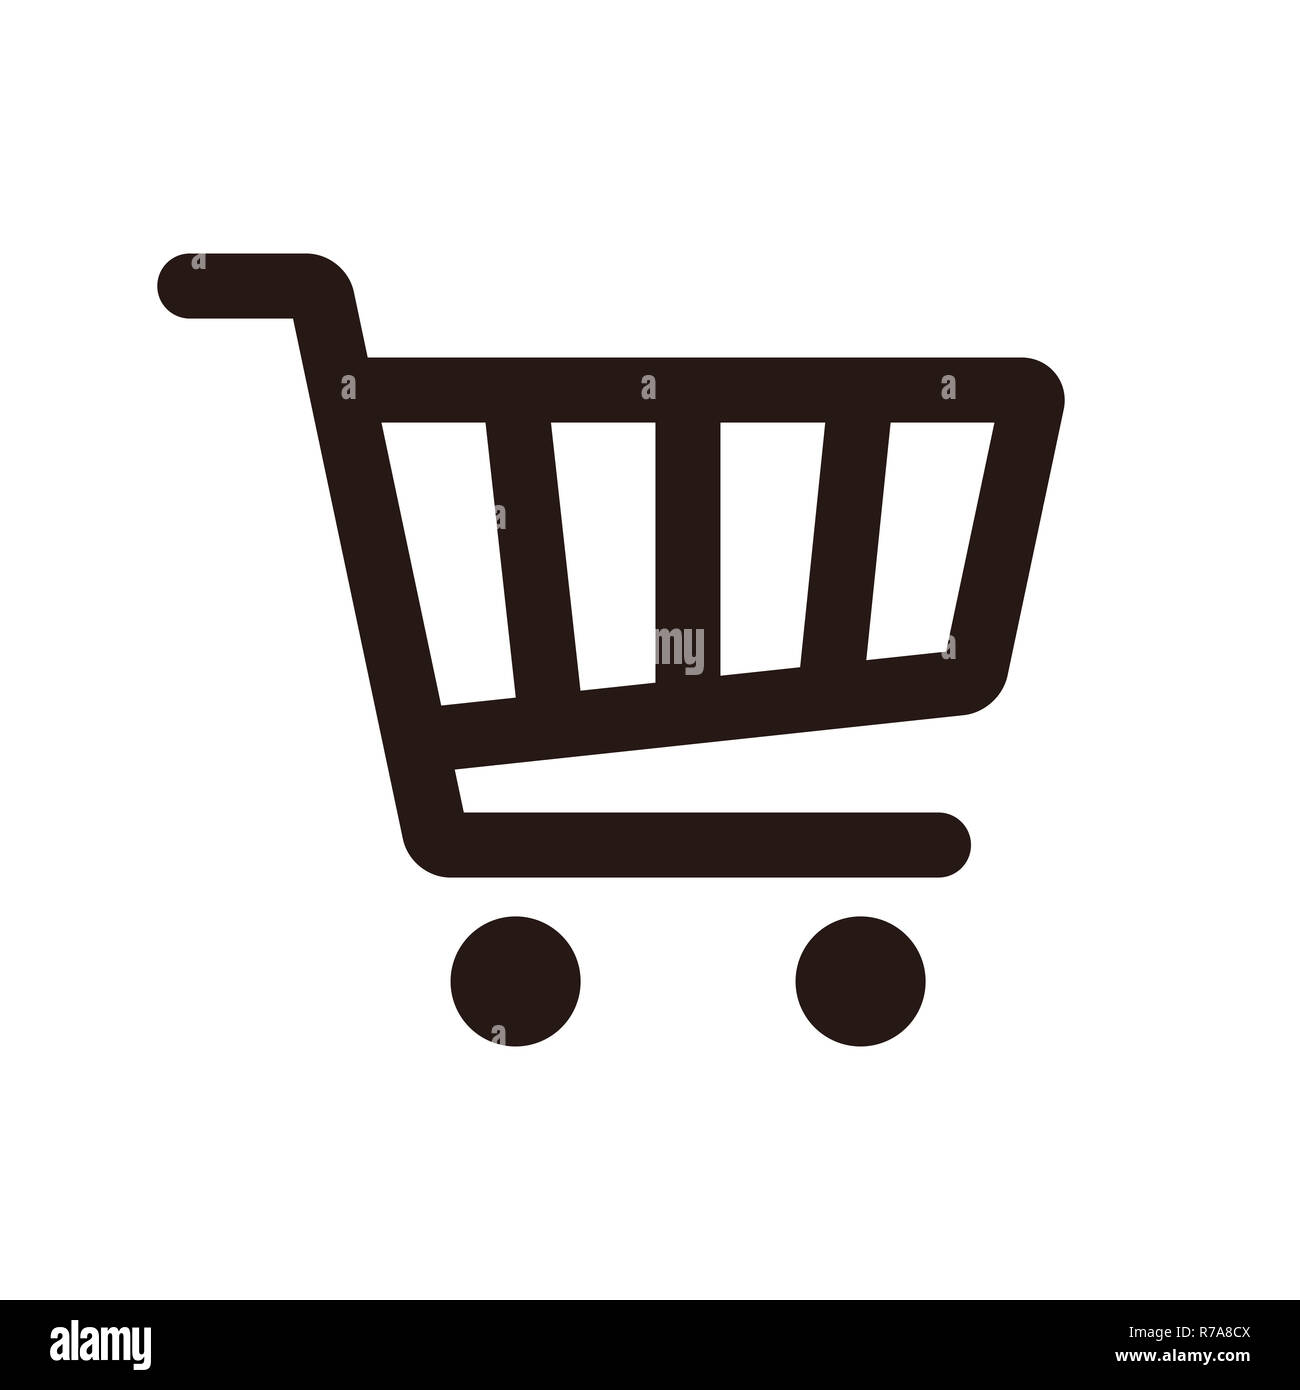 Shopping Cart Icon isolated on white background Stock Photo - Alamy